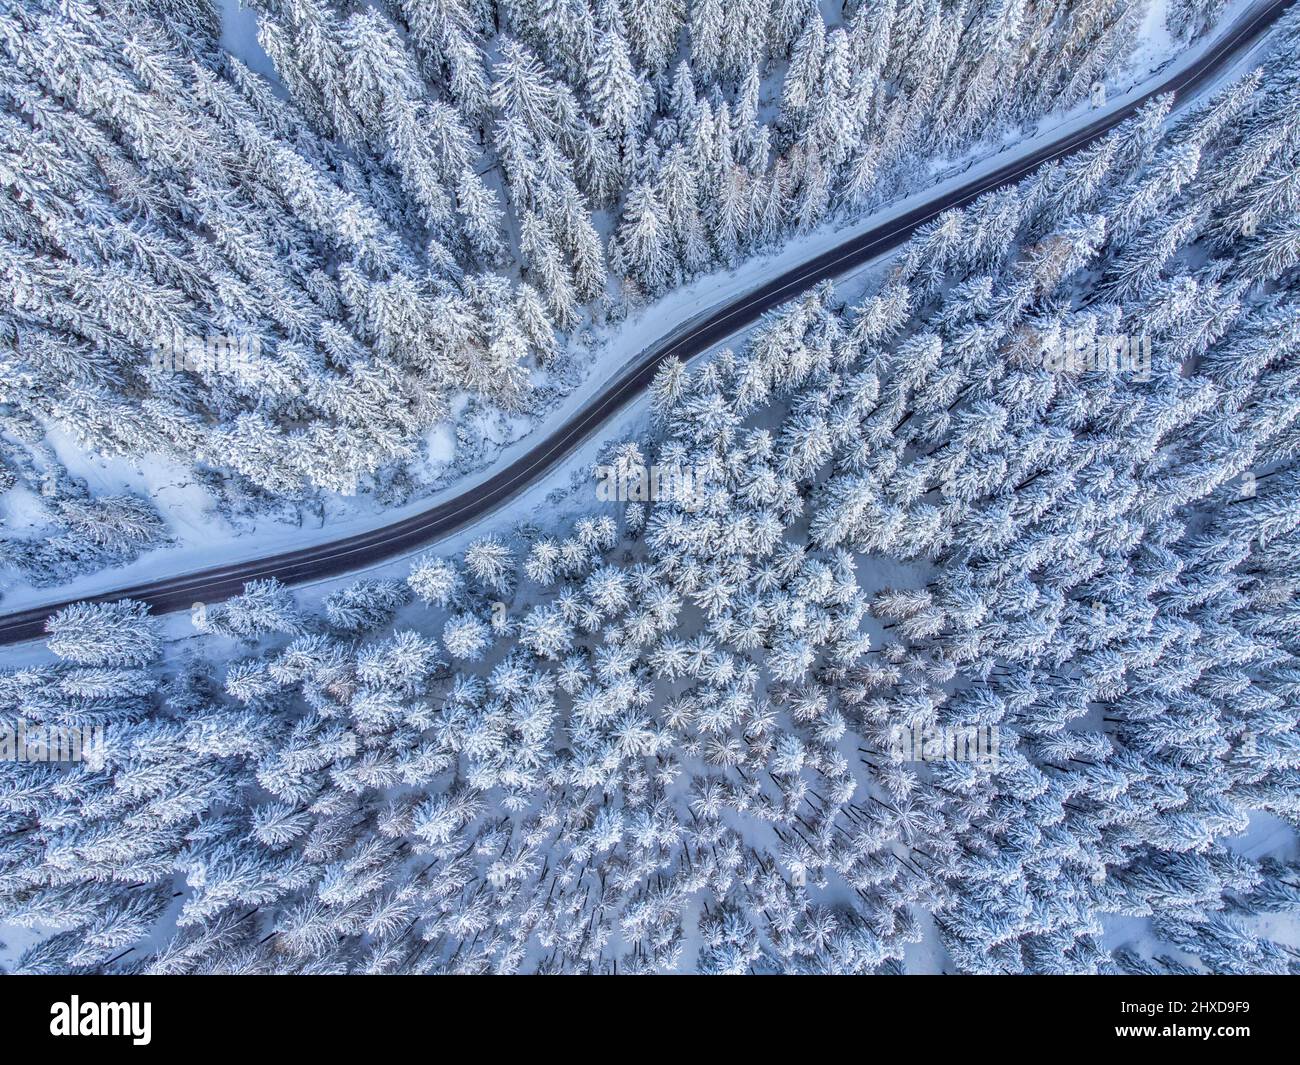 Europa, Italia, Veneto, provincia de Belluno, Dolomitas, carretera de montaña que cruza un bosque de coníferas después de una nevada, vista desde arriba Foto de stock